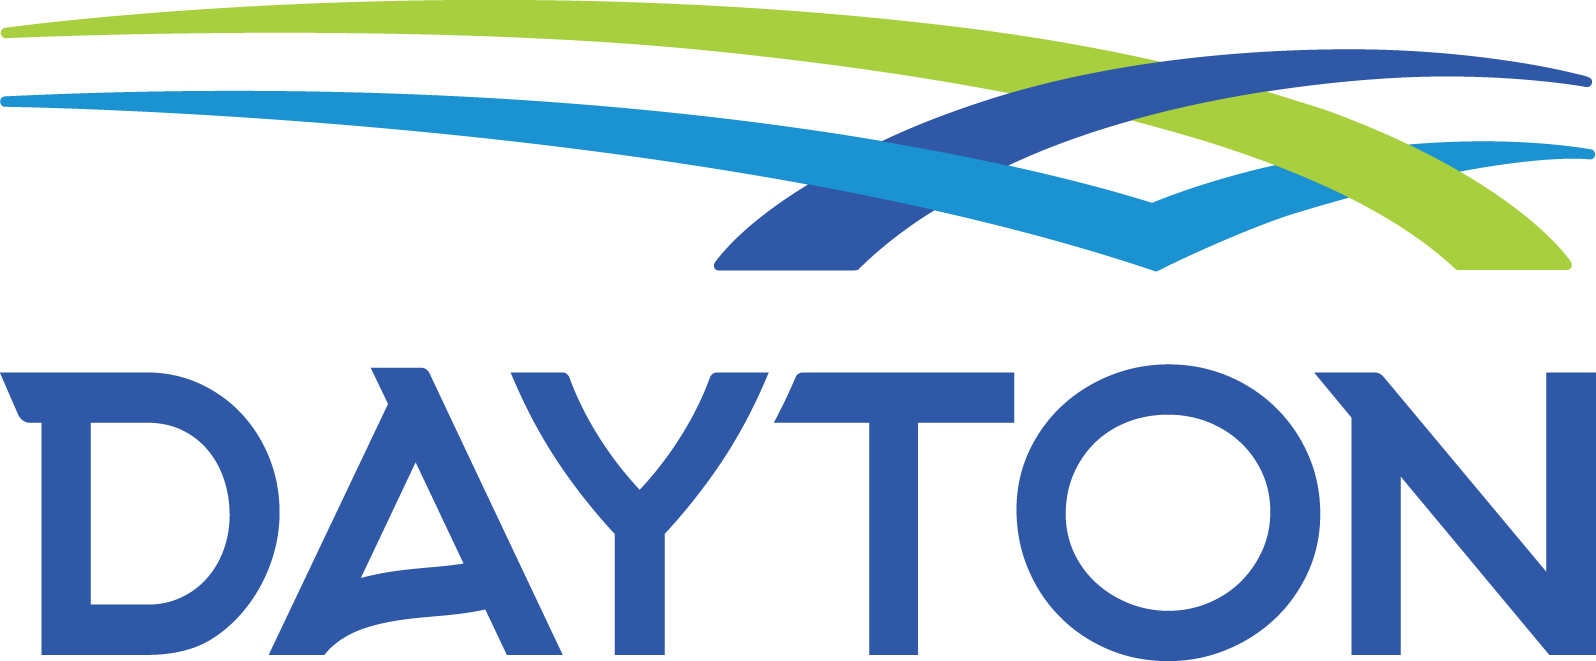 City of Dayton logo